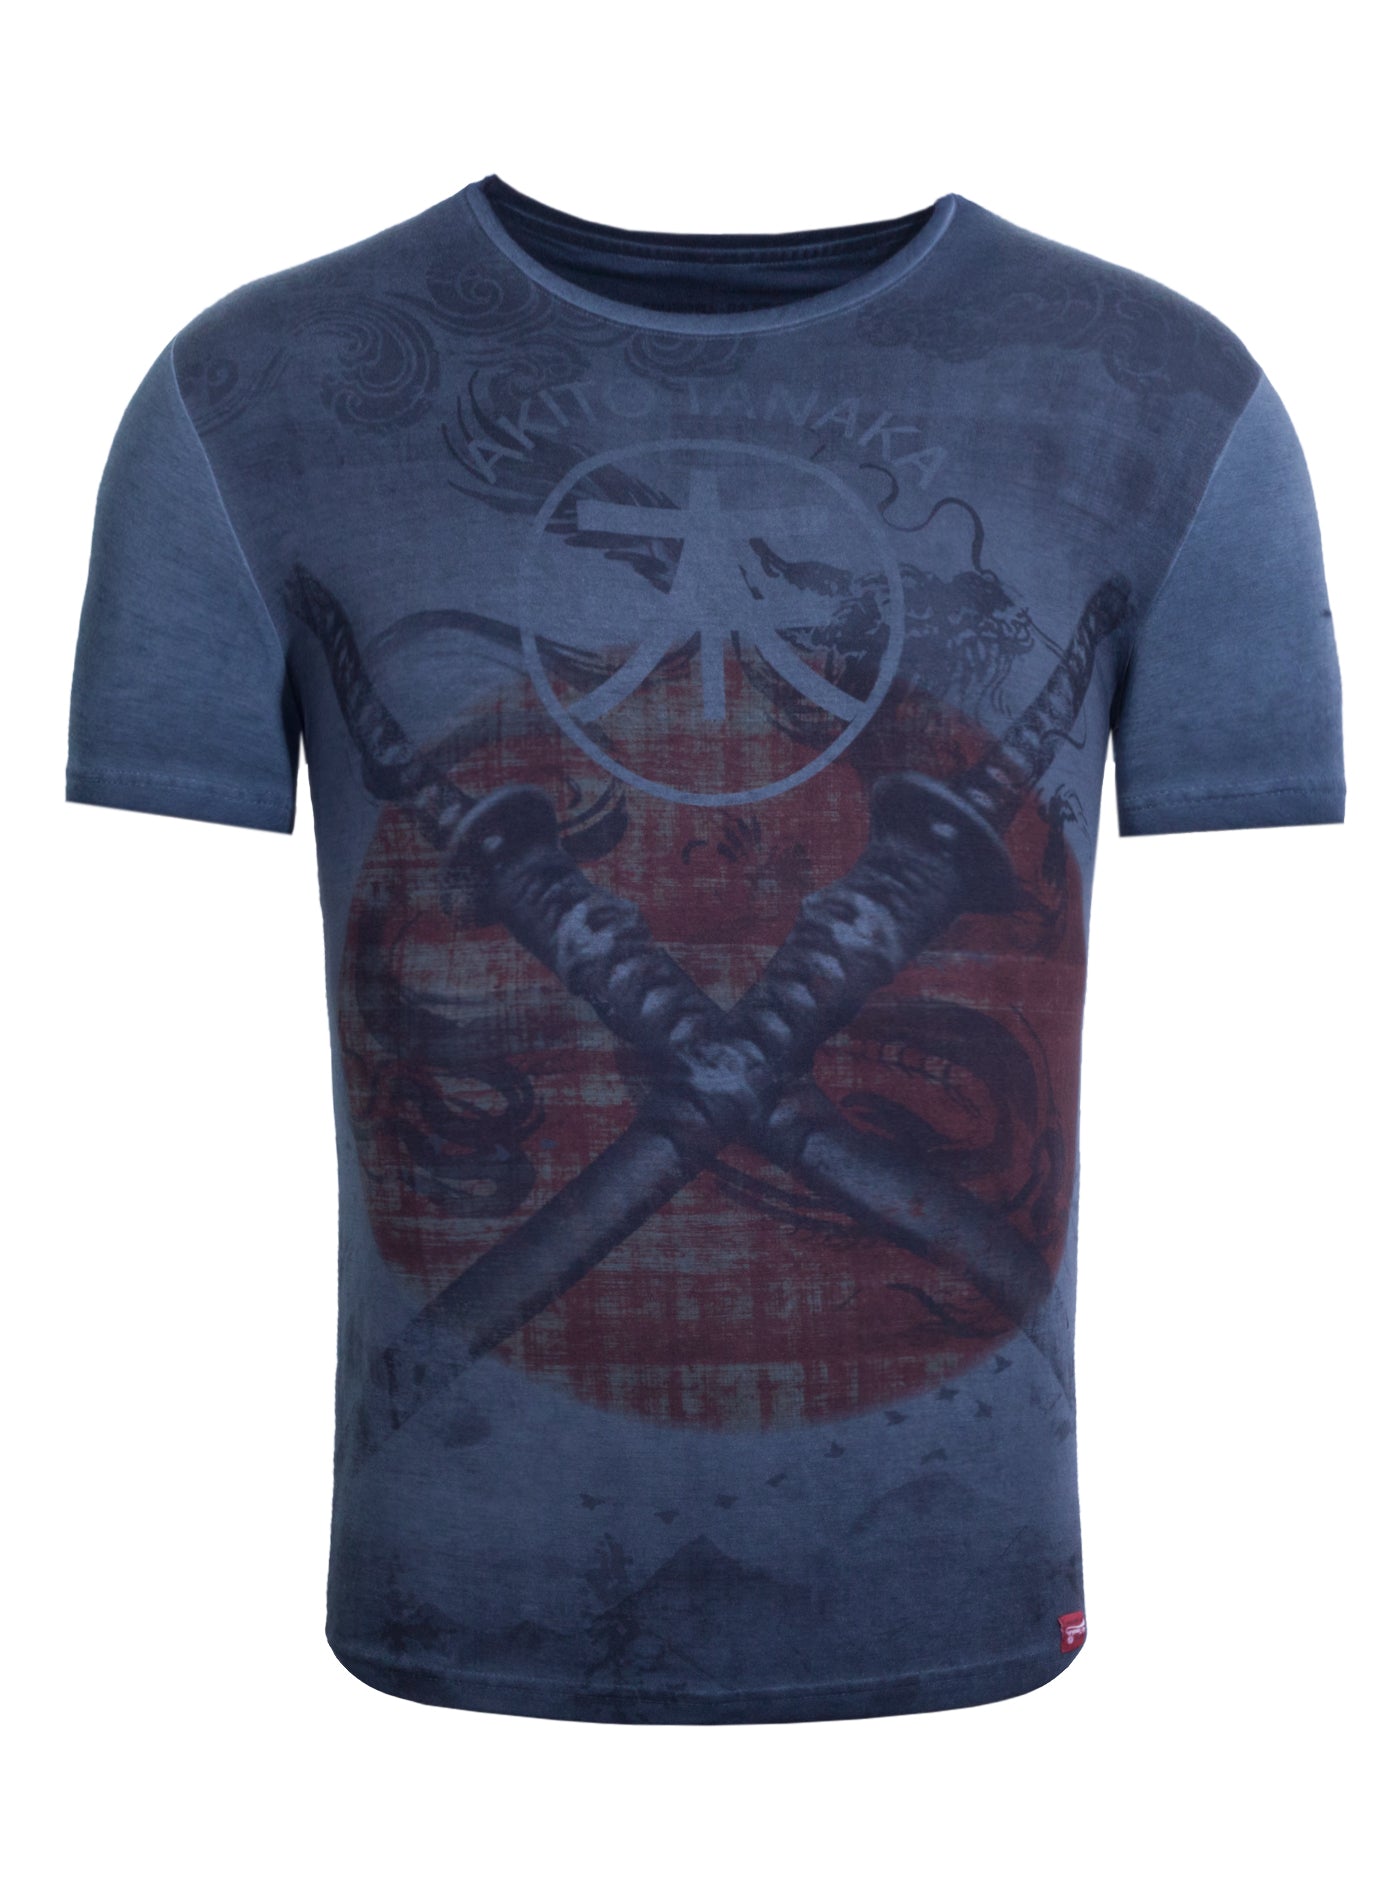 Print T-Shirt mit komplett bedrucktem Vorderteil Double Sword